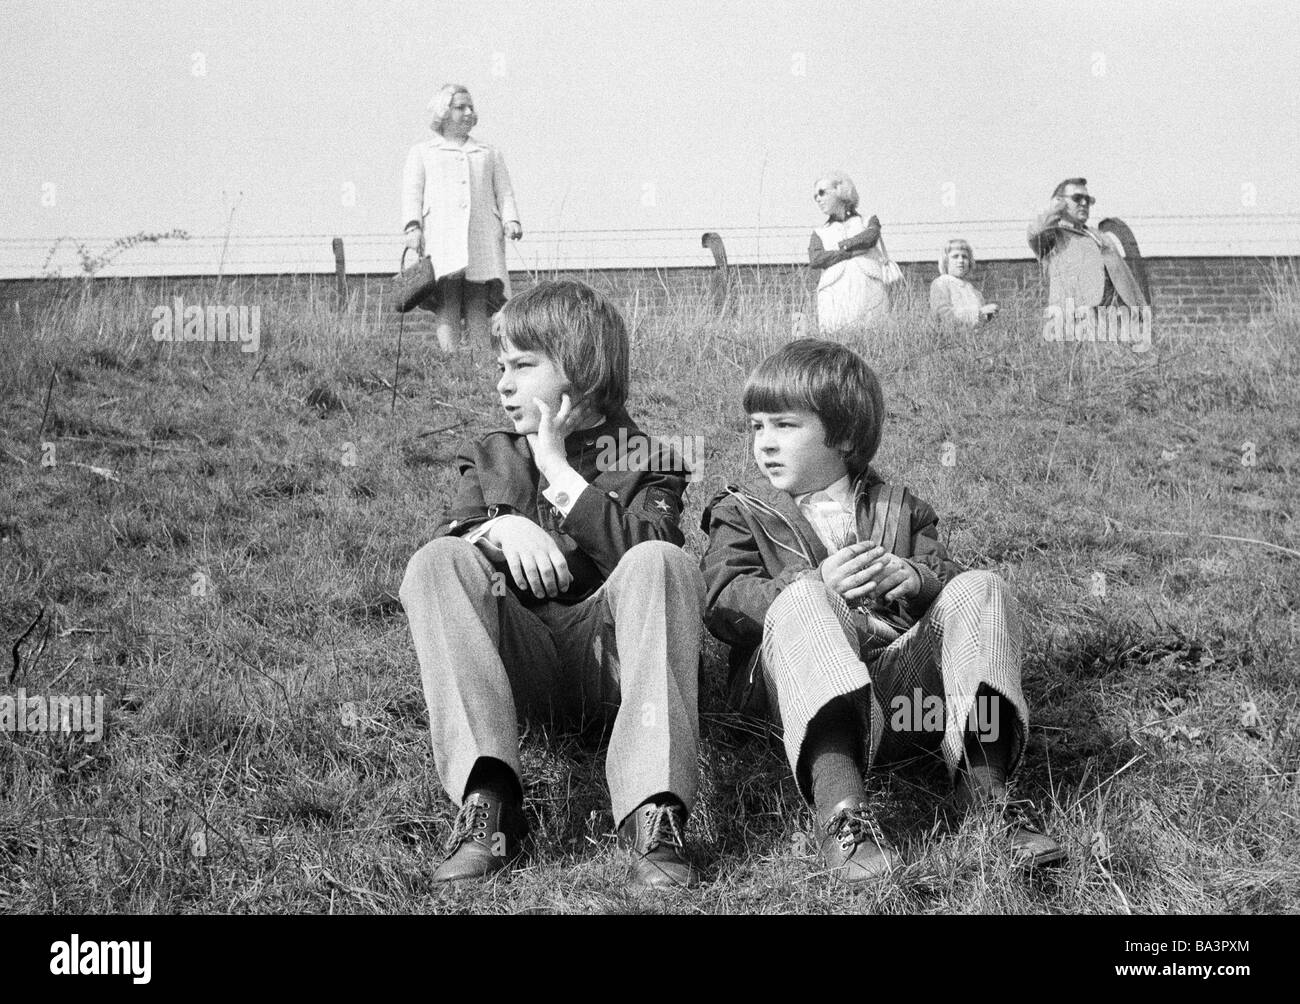 Negli anni settanta, foto in bianco e nero, persone, bambini, due ragazzi di sedersi su un prato, di età compresa tra i 7 e i 12 anni Foto Stock